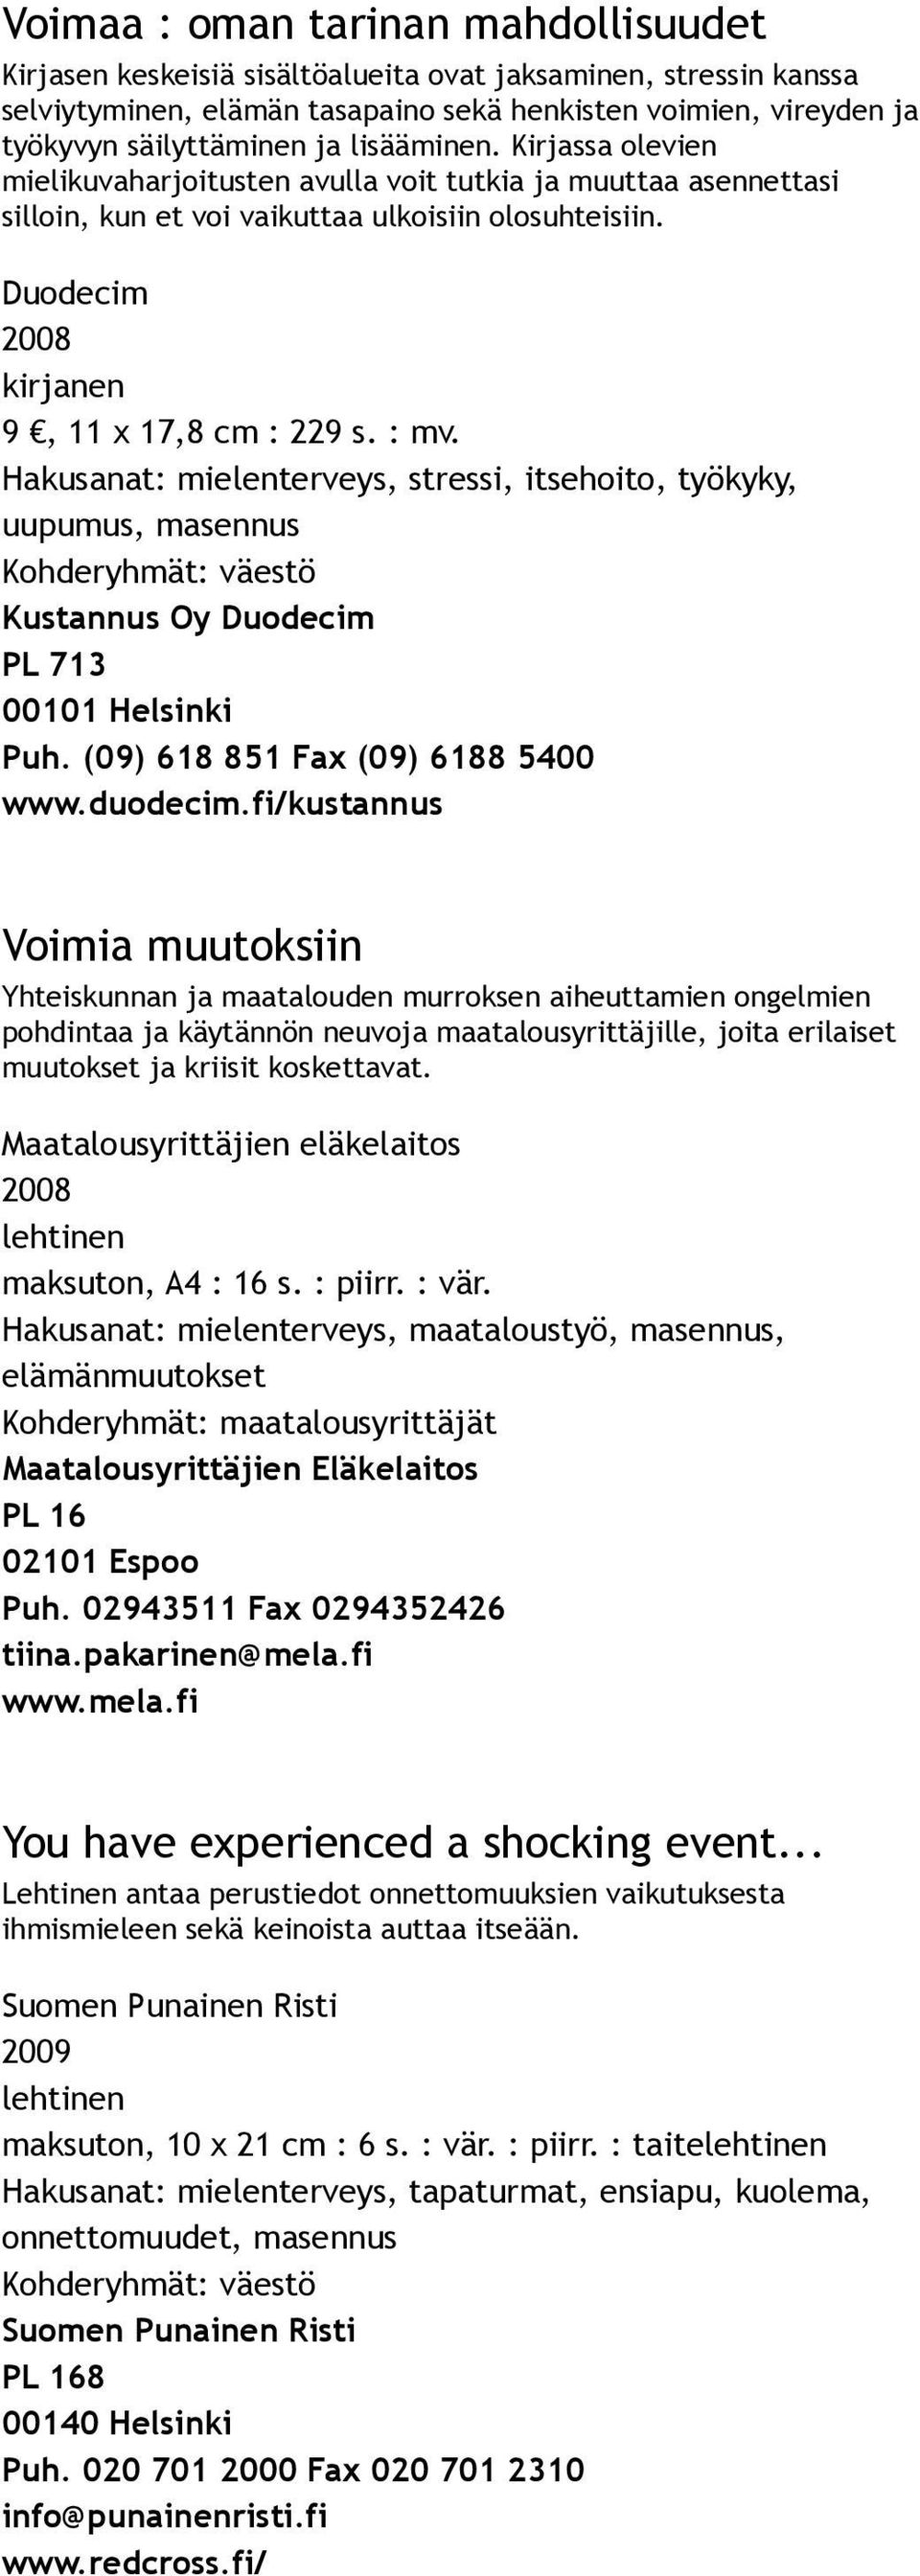 Hakusanat: mielenterveys, stressi, itsehoito, työkyky, uupumus, masennus Kustannus Oy Duodecim PL 713 00101 Helsinki Puh. (09) 618 851 Fax (09) 6188 5400 www.duodecim.